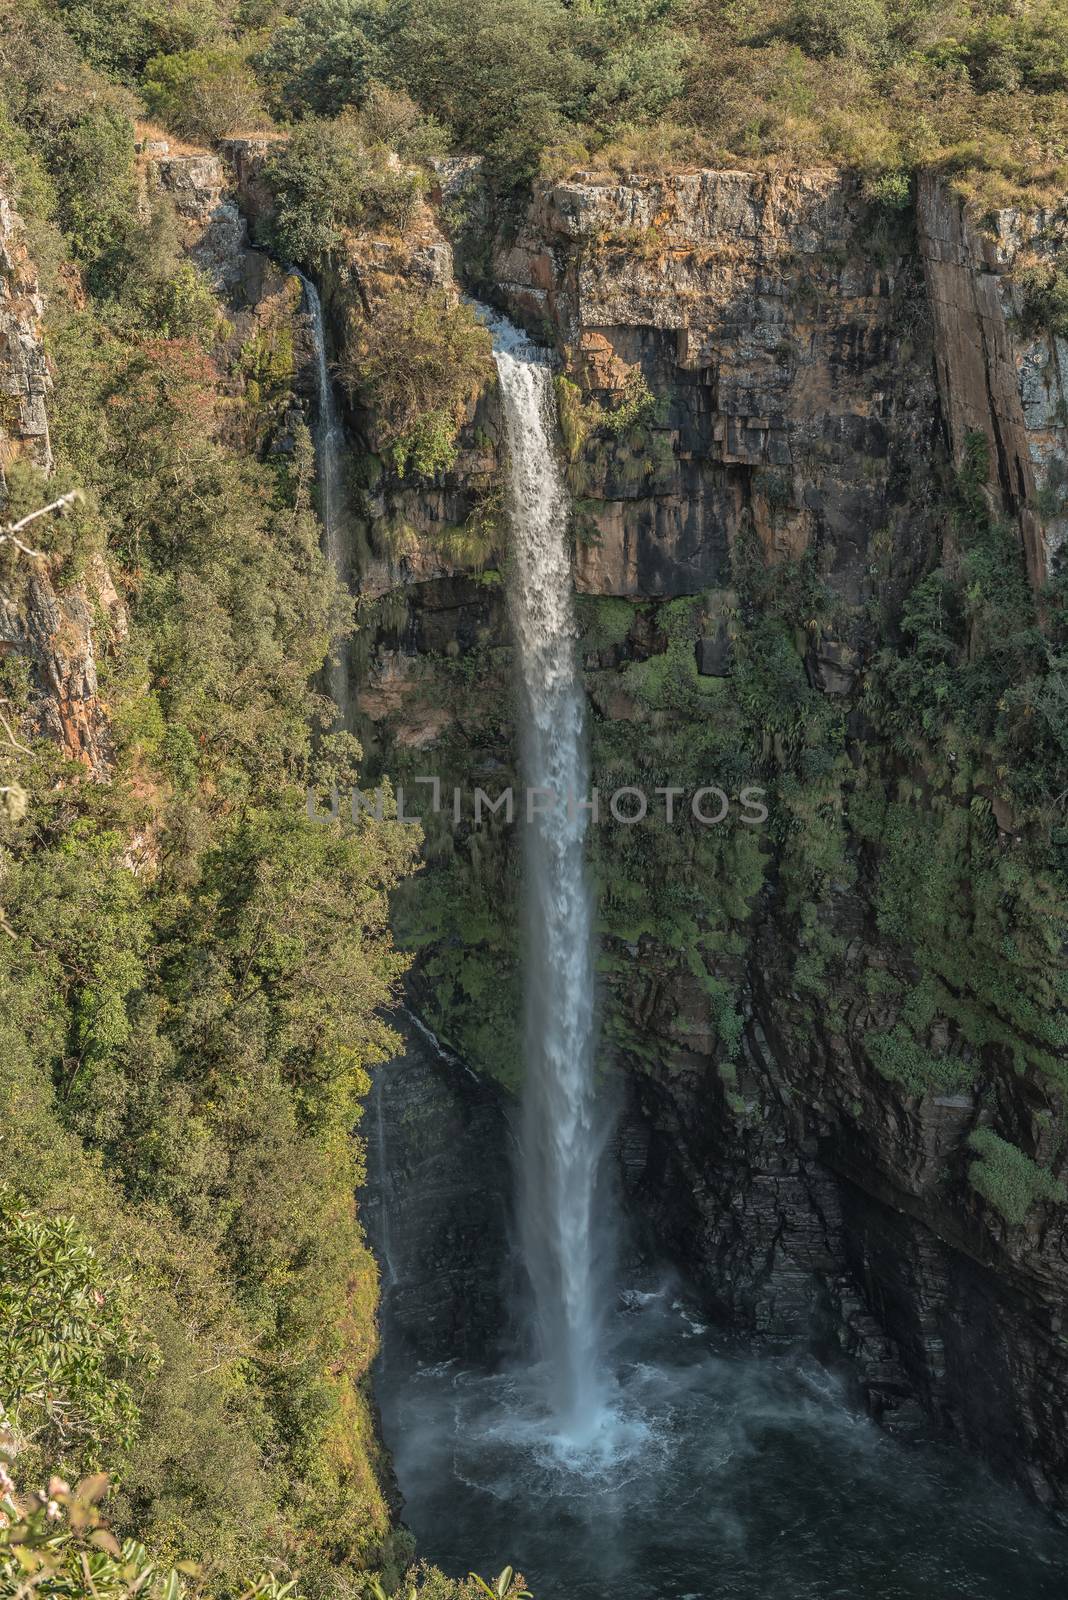 A view of the Mac Mac Falls near Sabie in Mpumalanga